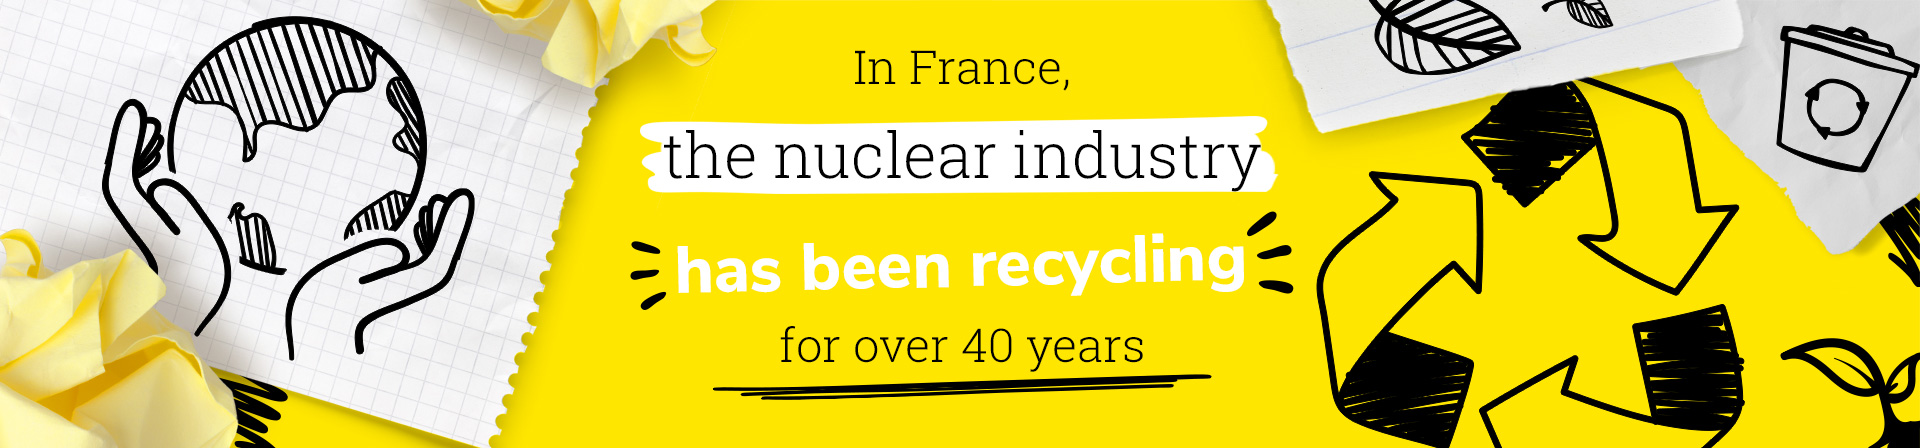 Bannière Recyclage déchets nucléaires